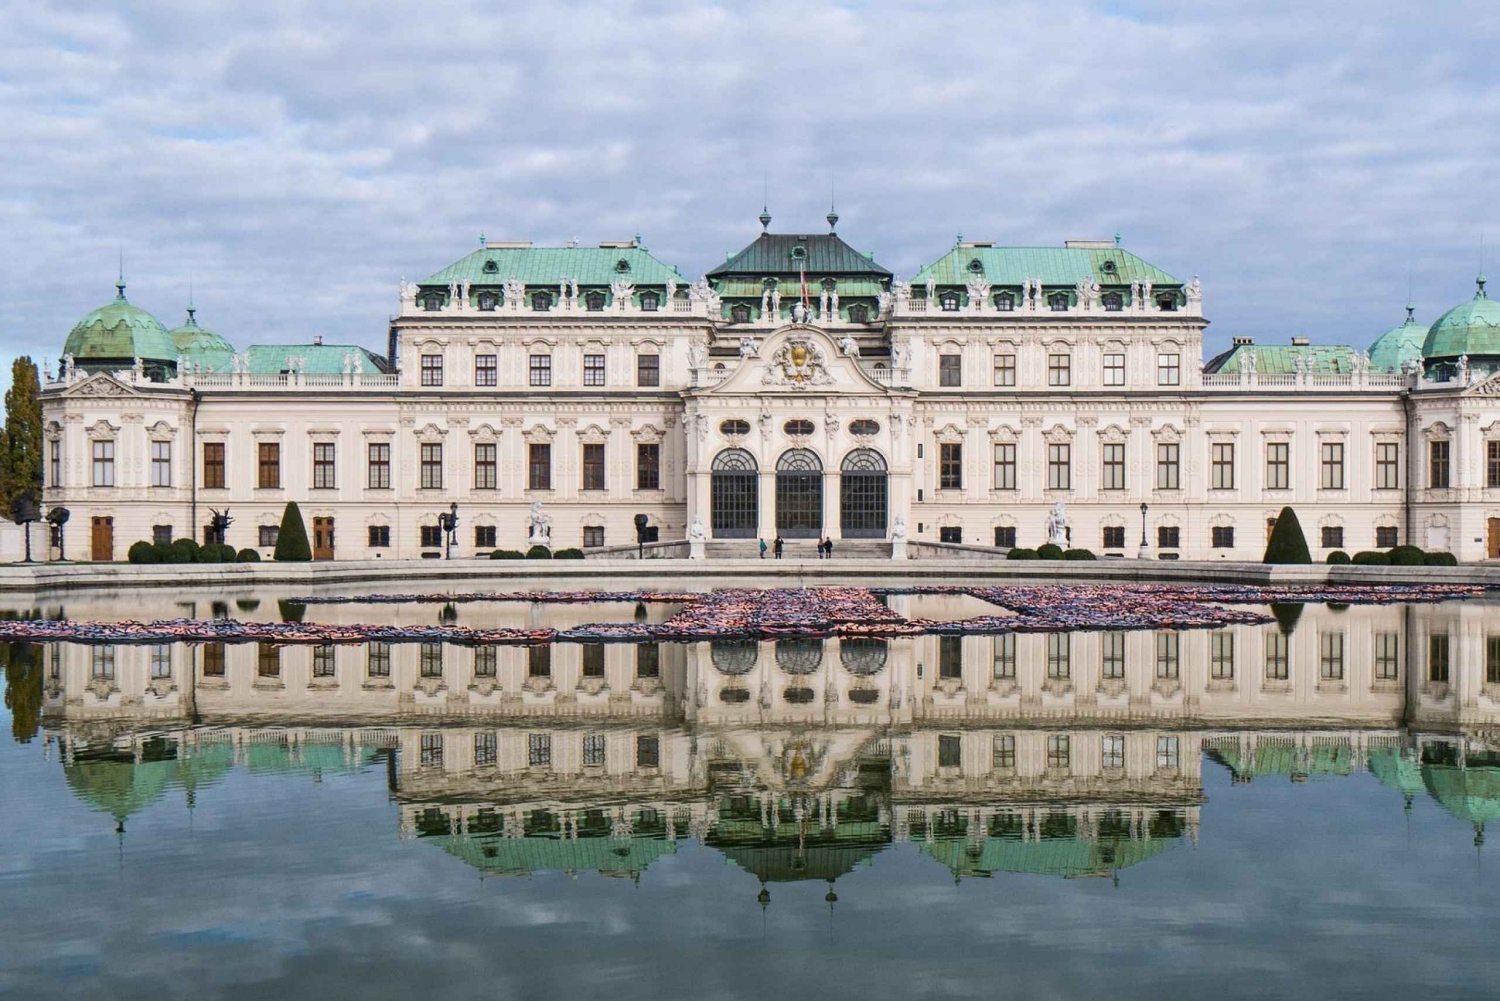 Privat guidad stadsrundtur och rundtur i gamla stan i Wien